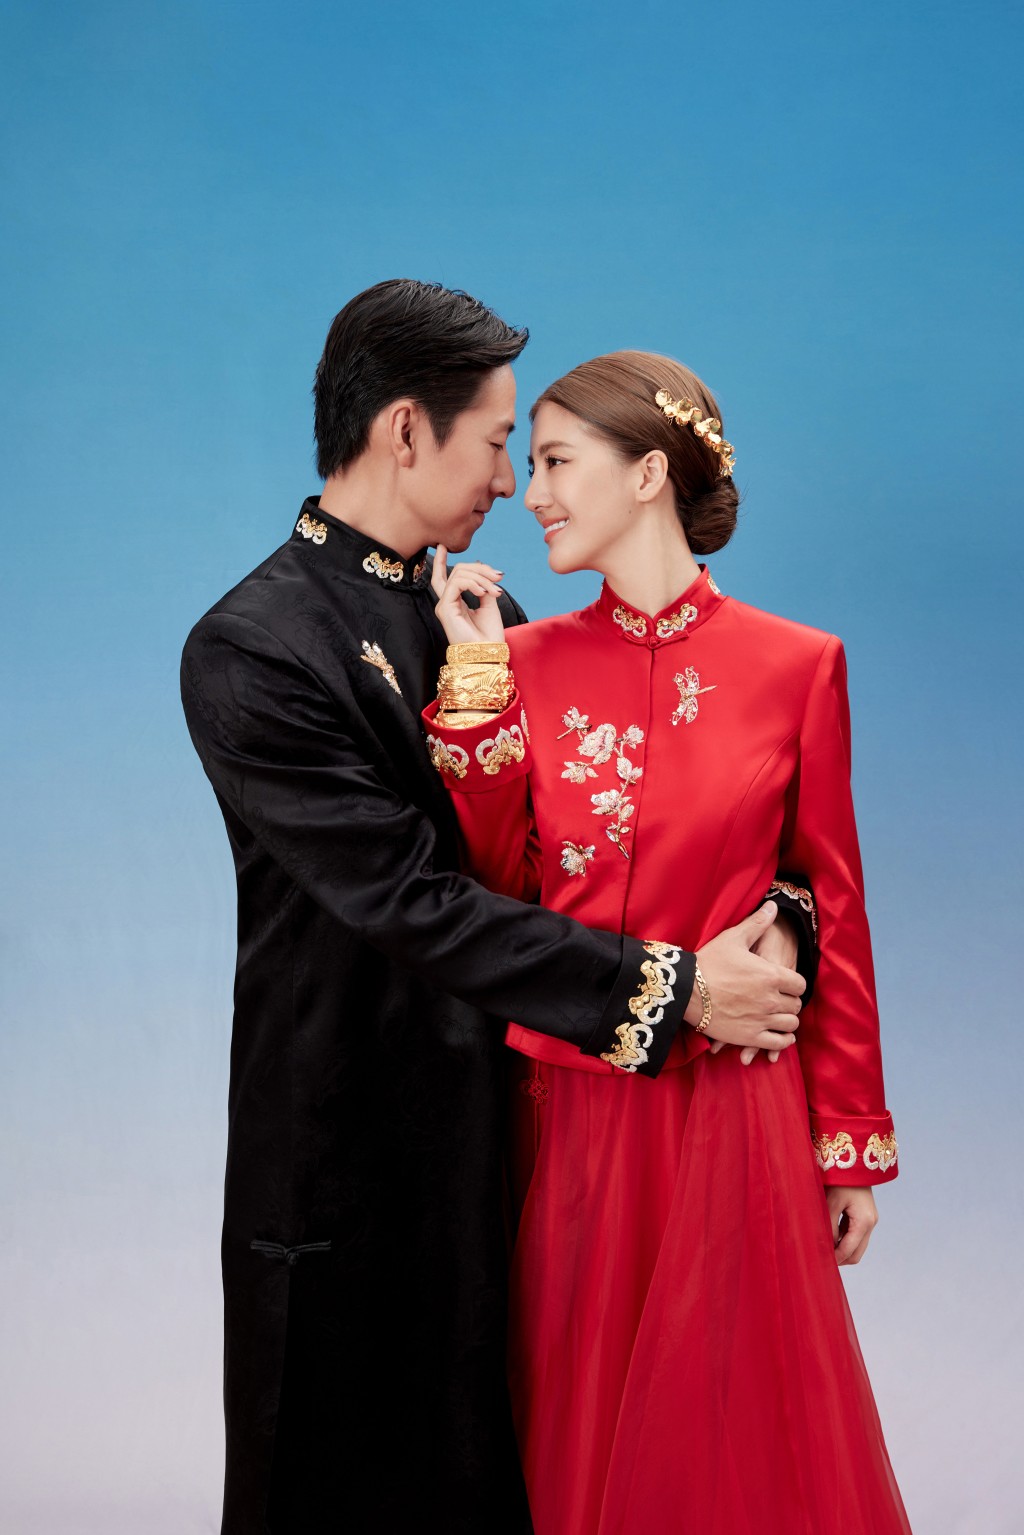 吴千语与施伯雄昨日（20日）终于宣布在12月16日于双方亲友见证下完成证婚仪式。